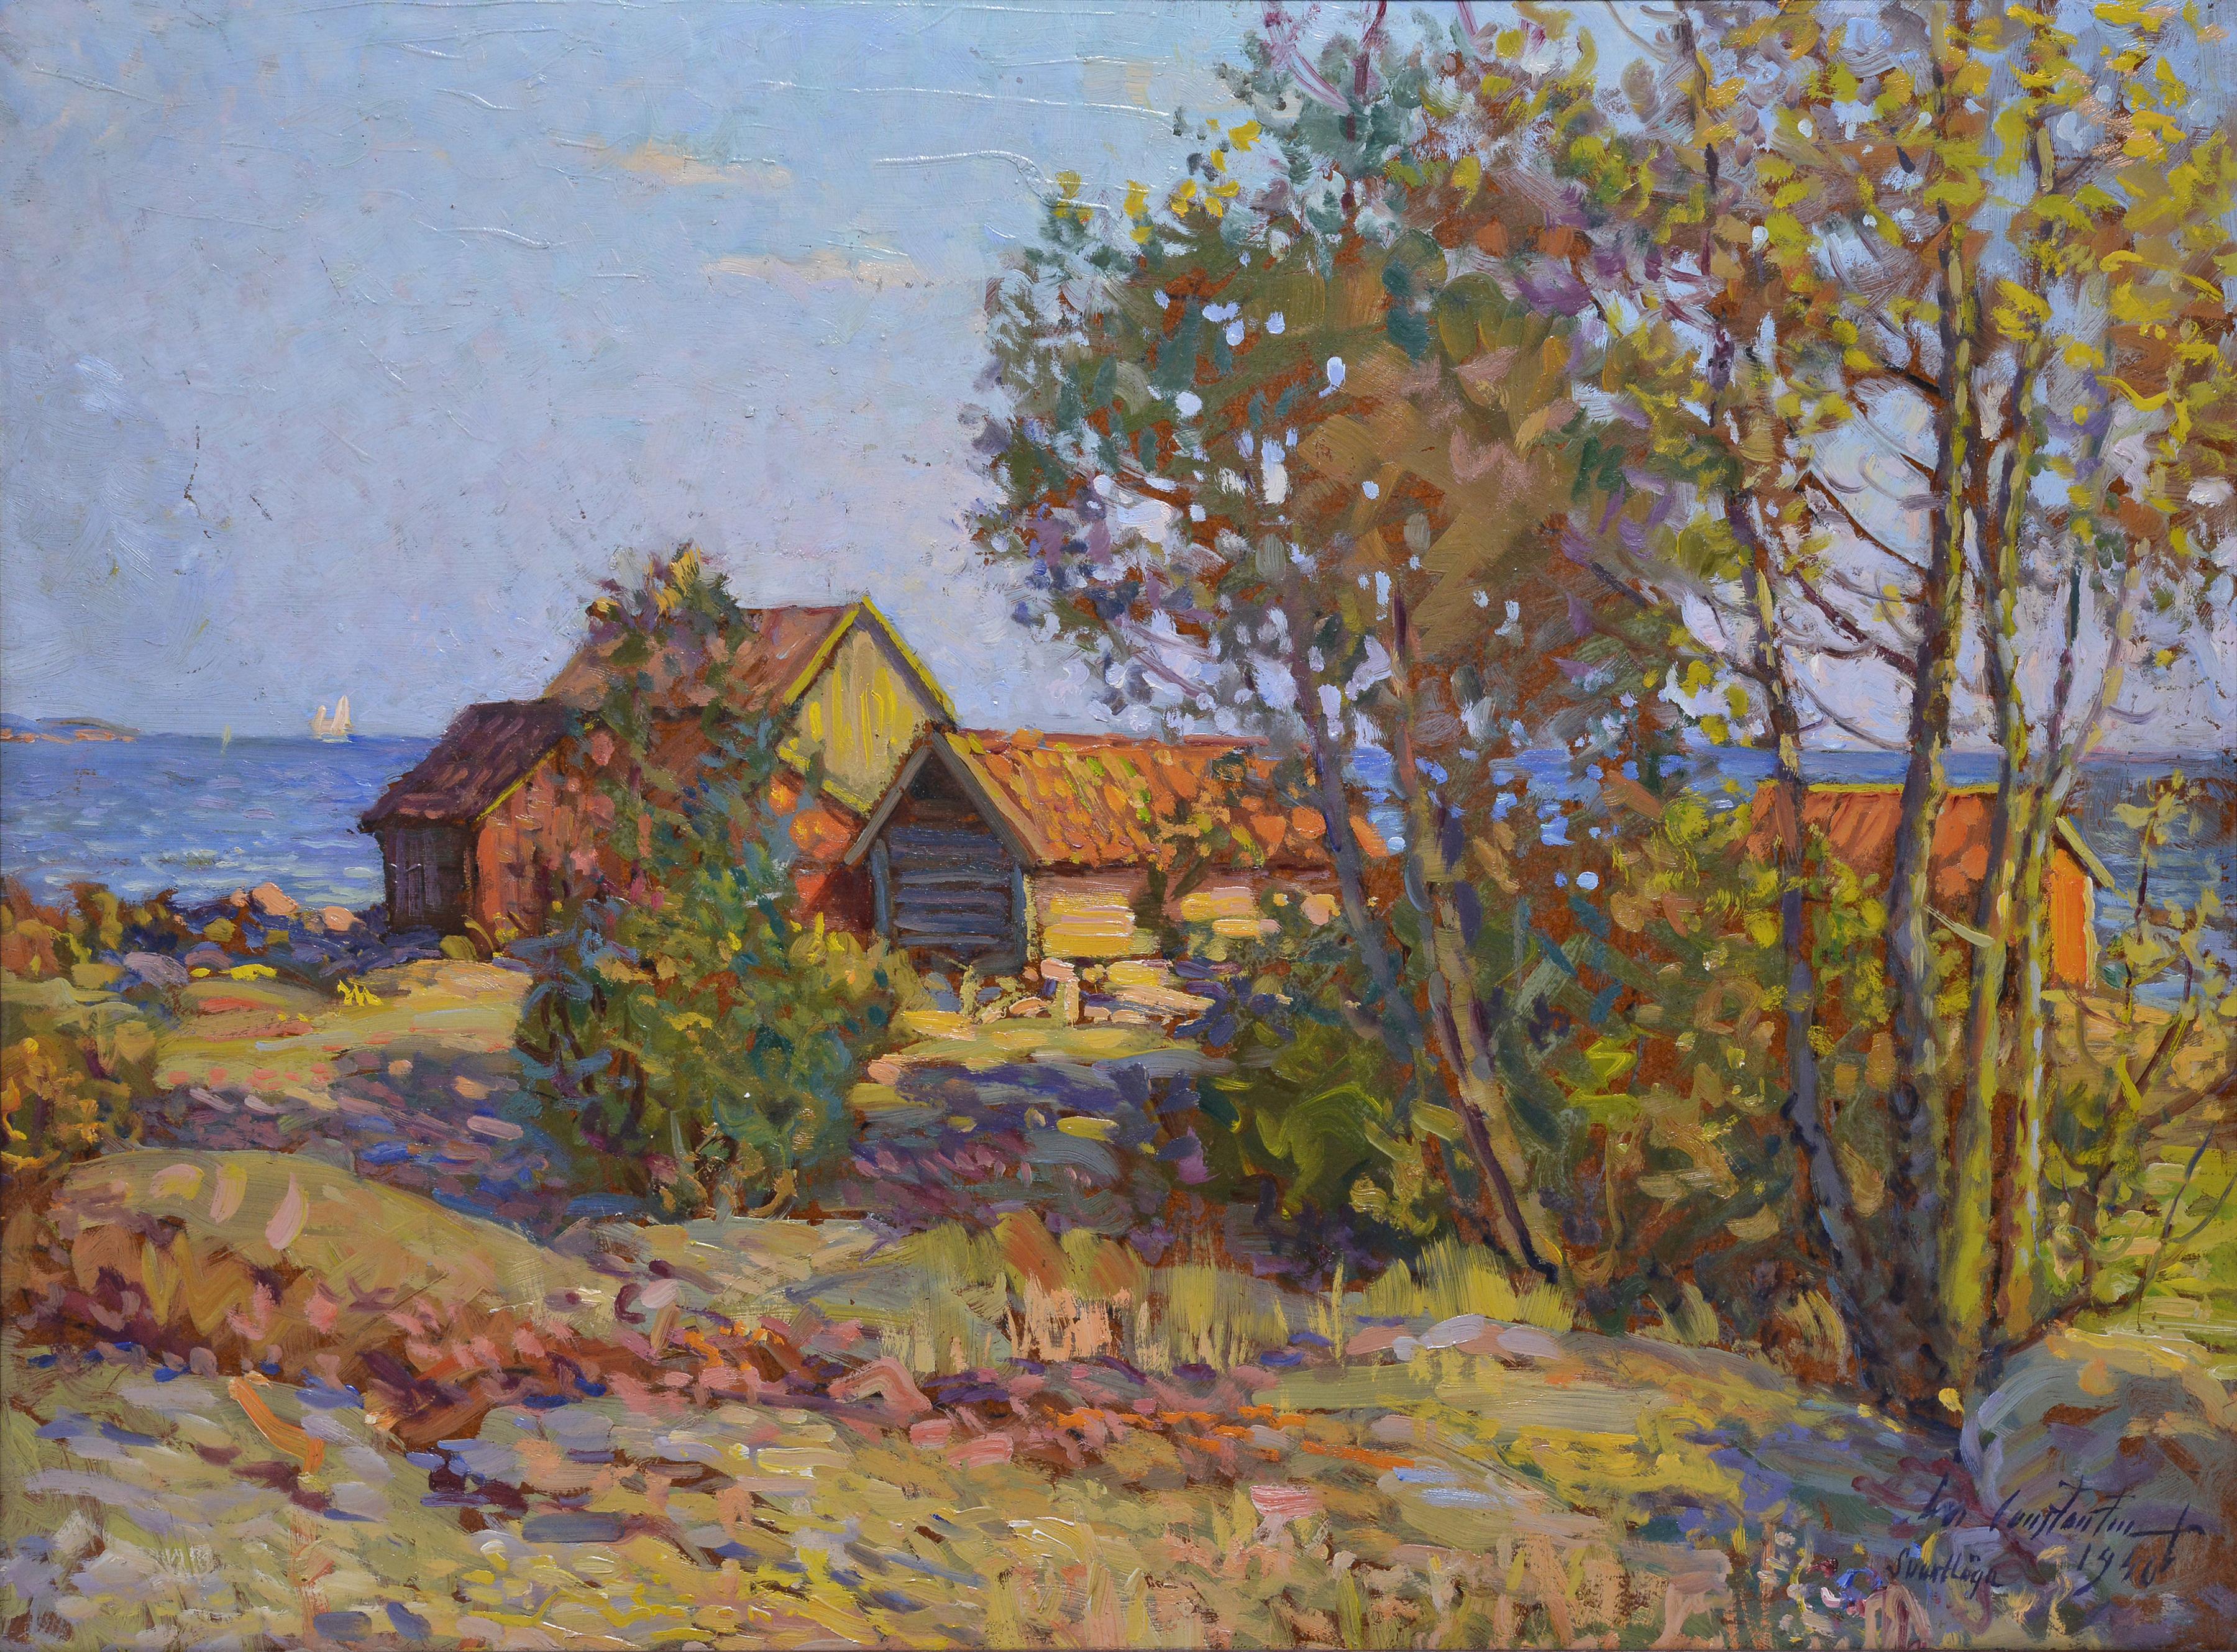 Stockholmer Archipelago-Landschaft 1940, Ölgemälde, bekannter impressionistischer Künstler  – Painting von Ivan Constantin Sannesjö Johansson